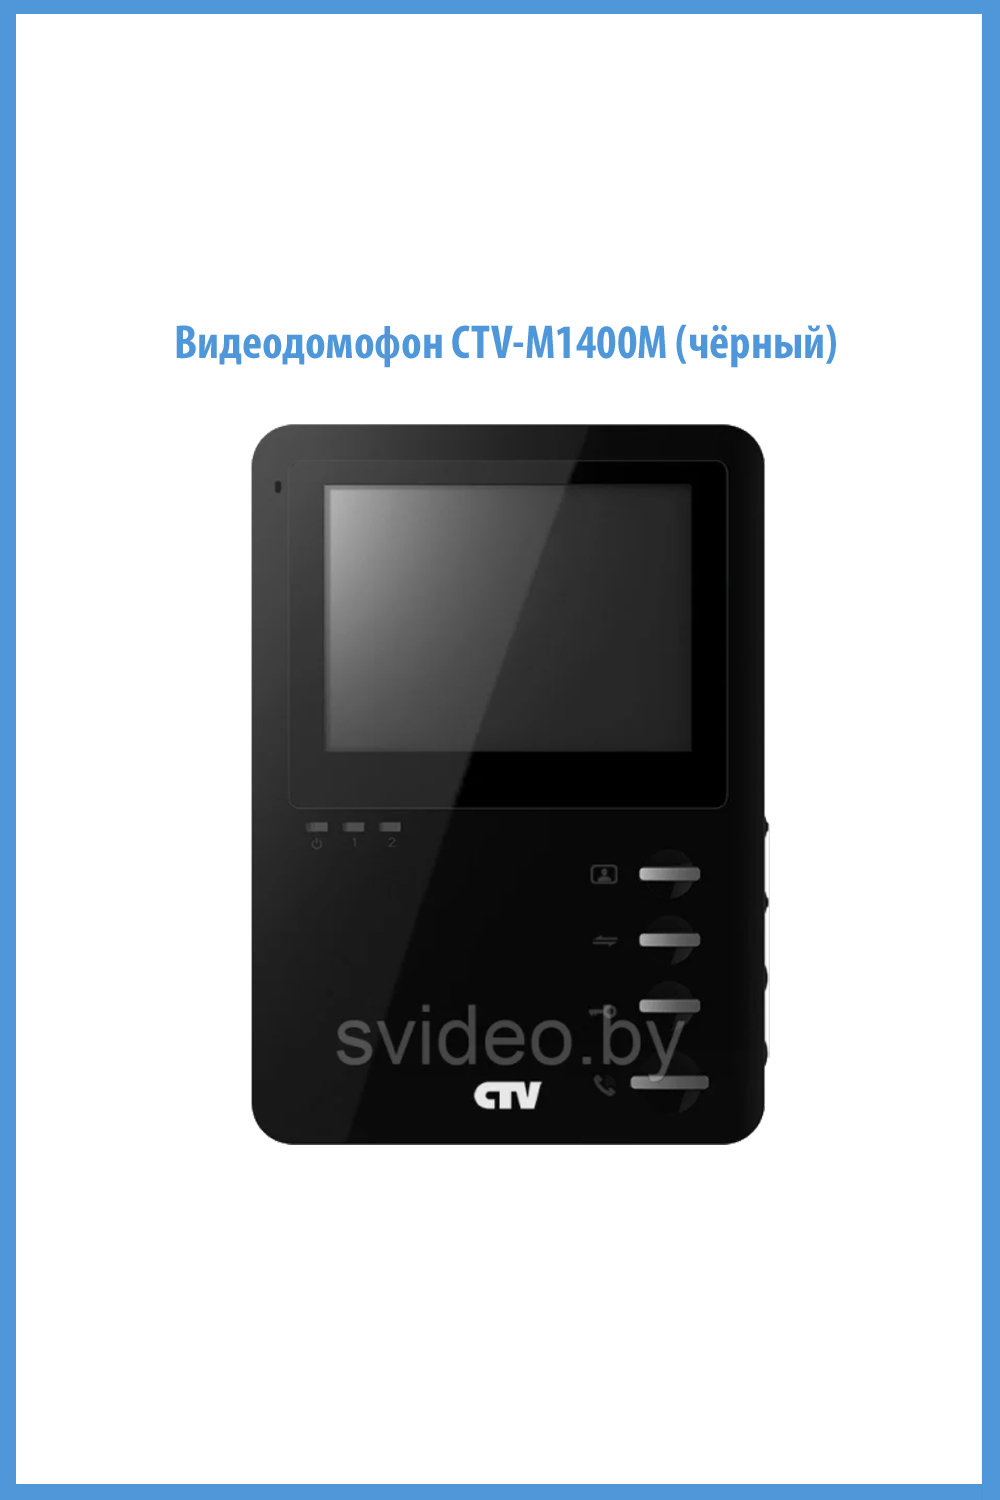 Видеодомофон CTV-M1400M (чёрный) 